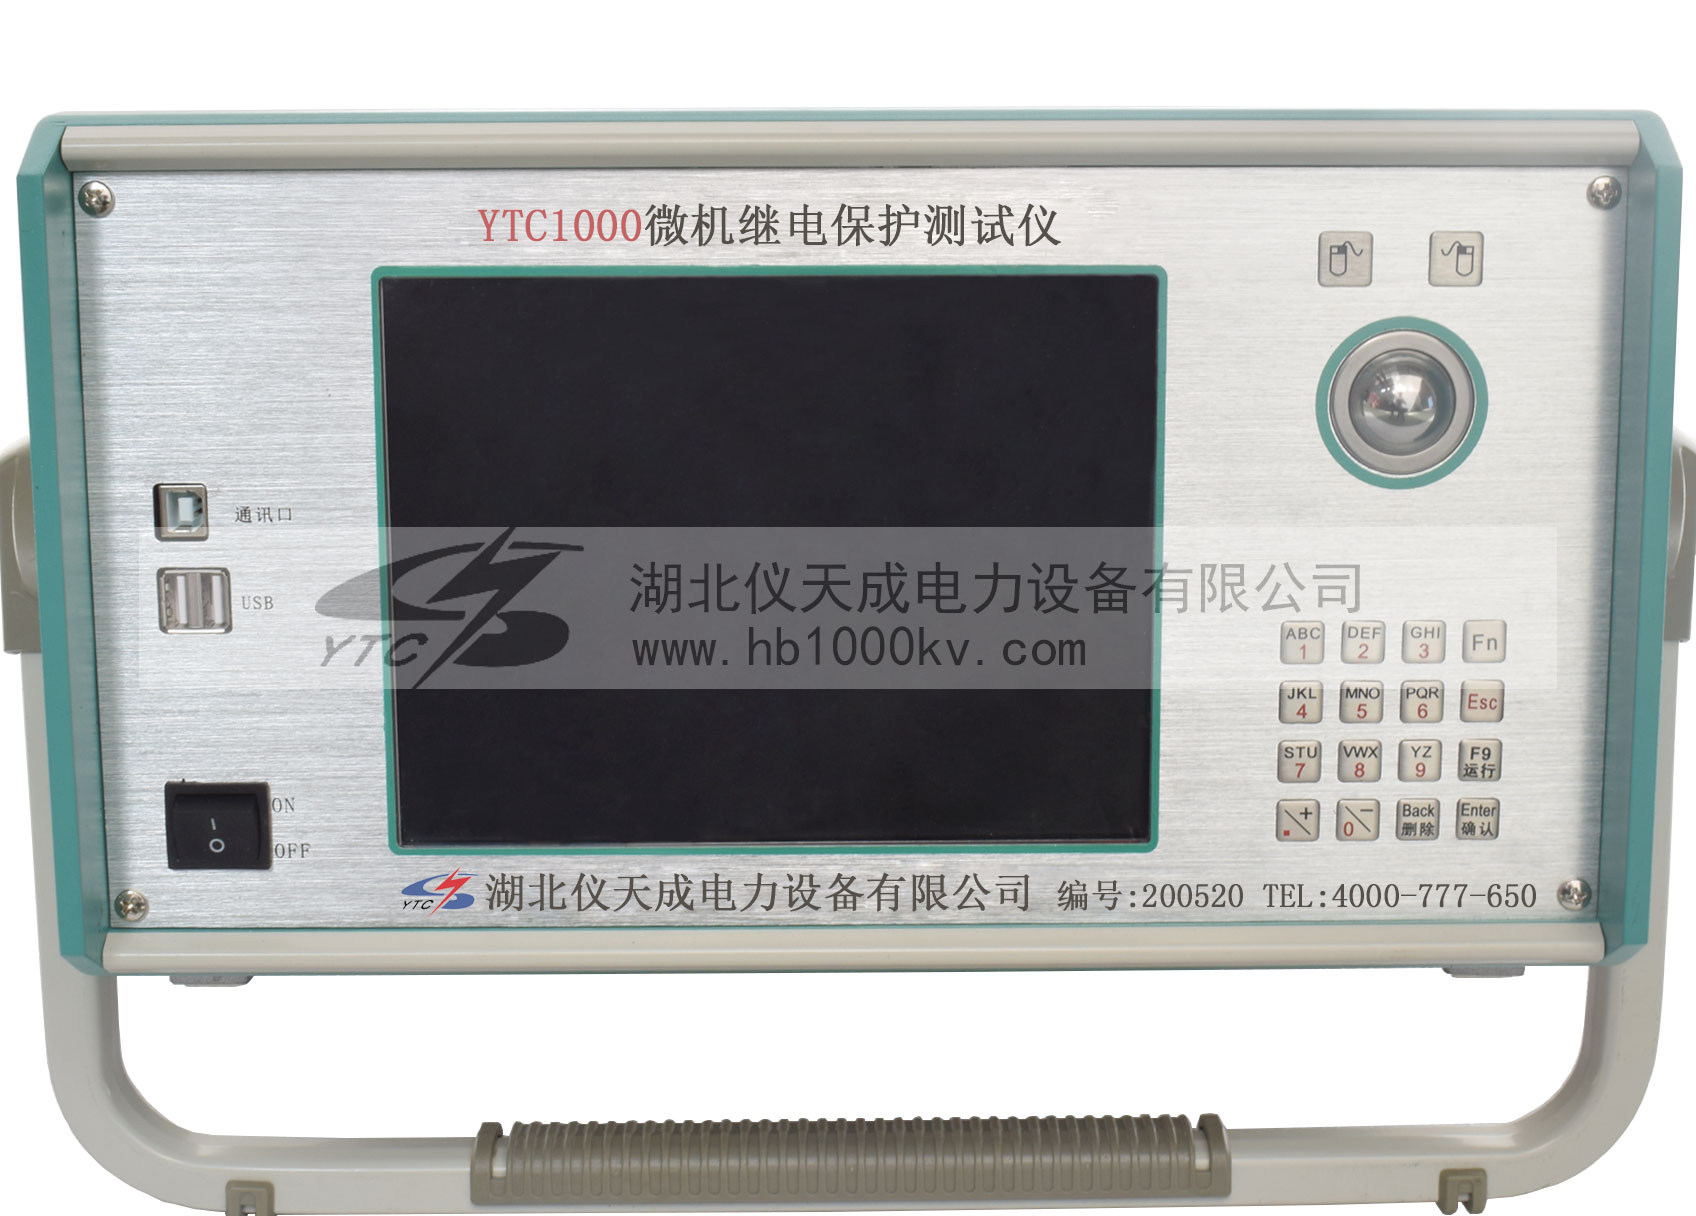 YTC1000微機繼電保護測試儀控製麵板